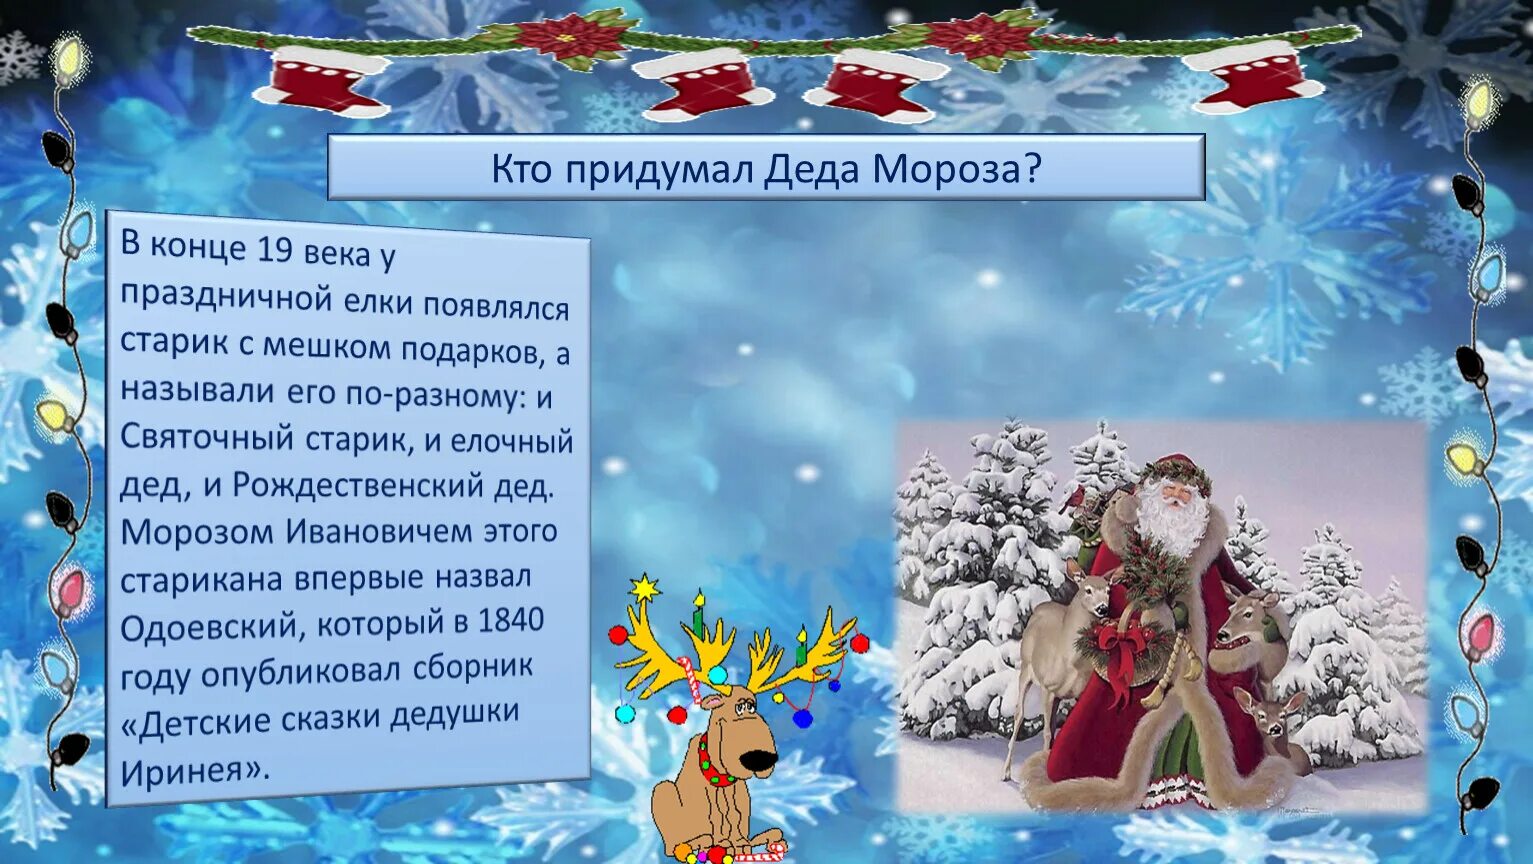 Как появился дед Мороз. Появление Деда Мороза. Откуда появился дед Мороз в России. Кто придумал Деда Мороза в России.